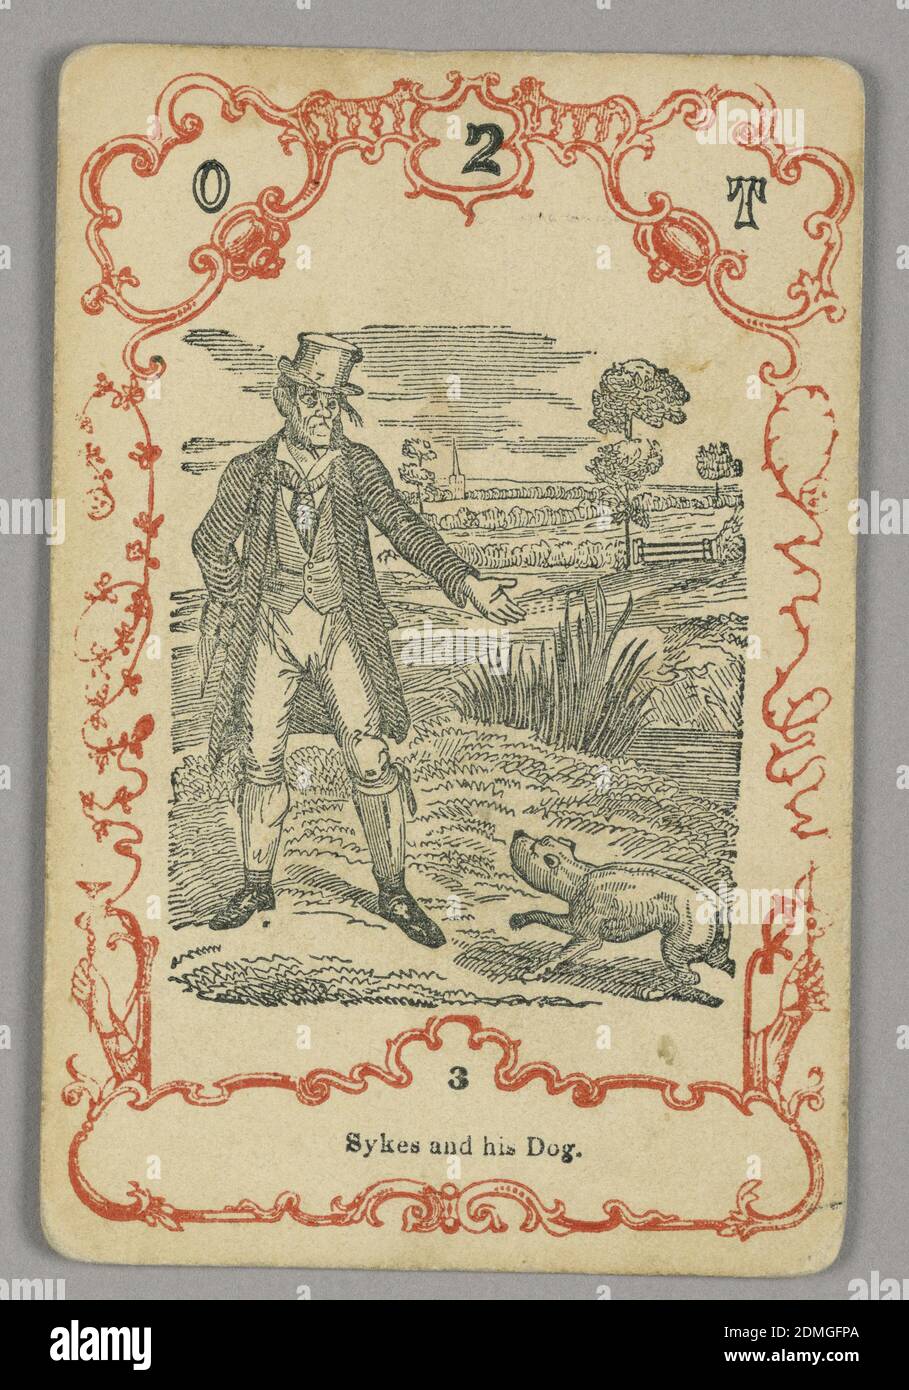 Spielkarte, rote und schwarze Tinte, Papier, oben nummerierte Karte: O 2 T; unten Mittelbild: 3, Europa, ca. 1855, Spielkarte Stockfoto